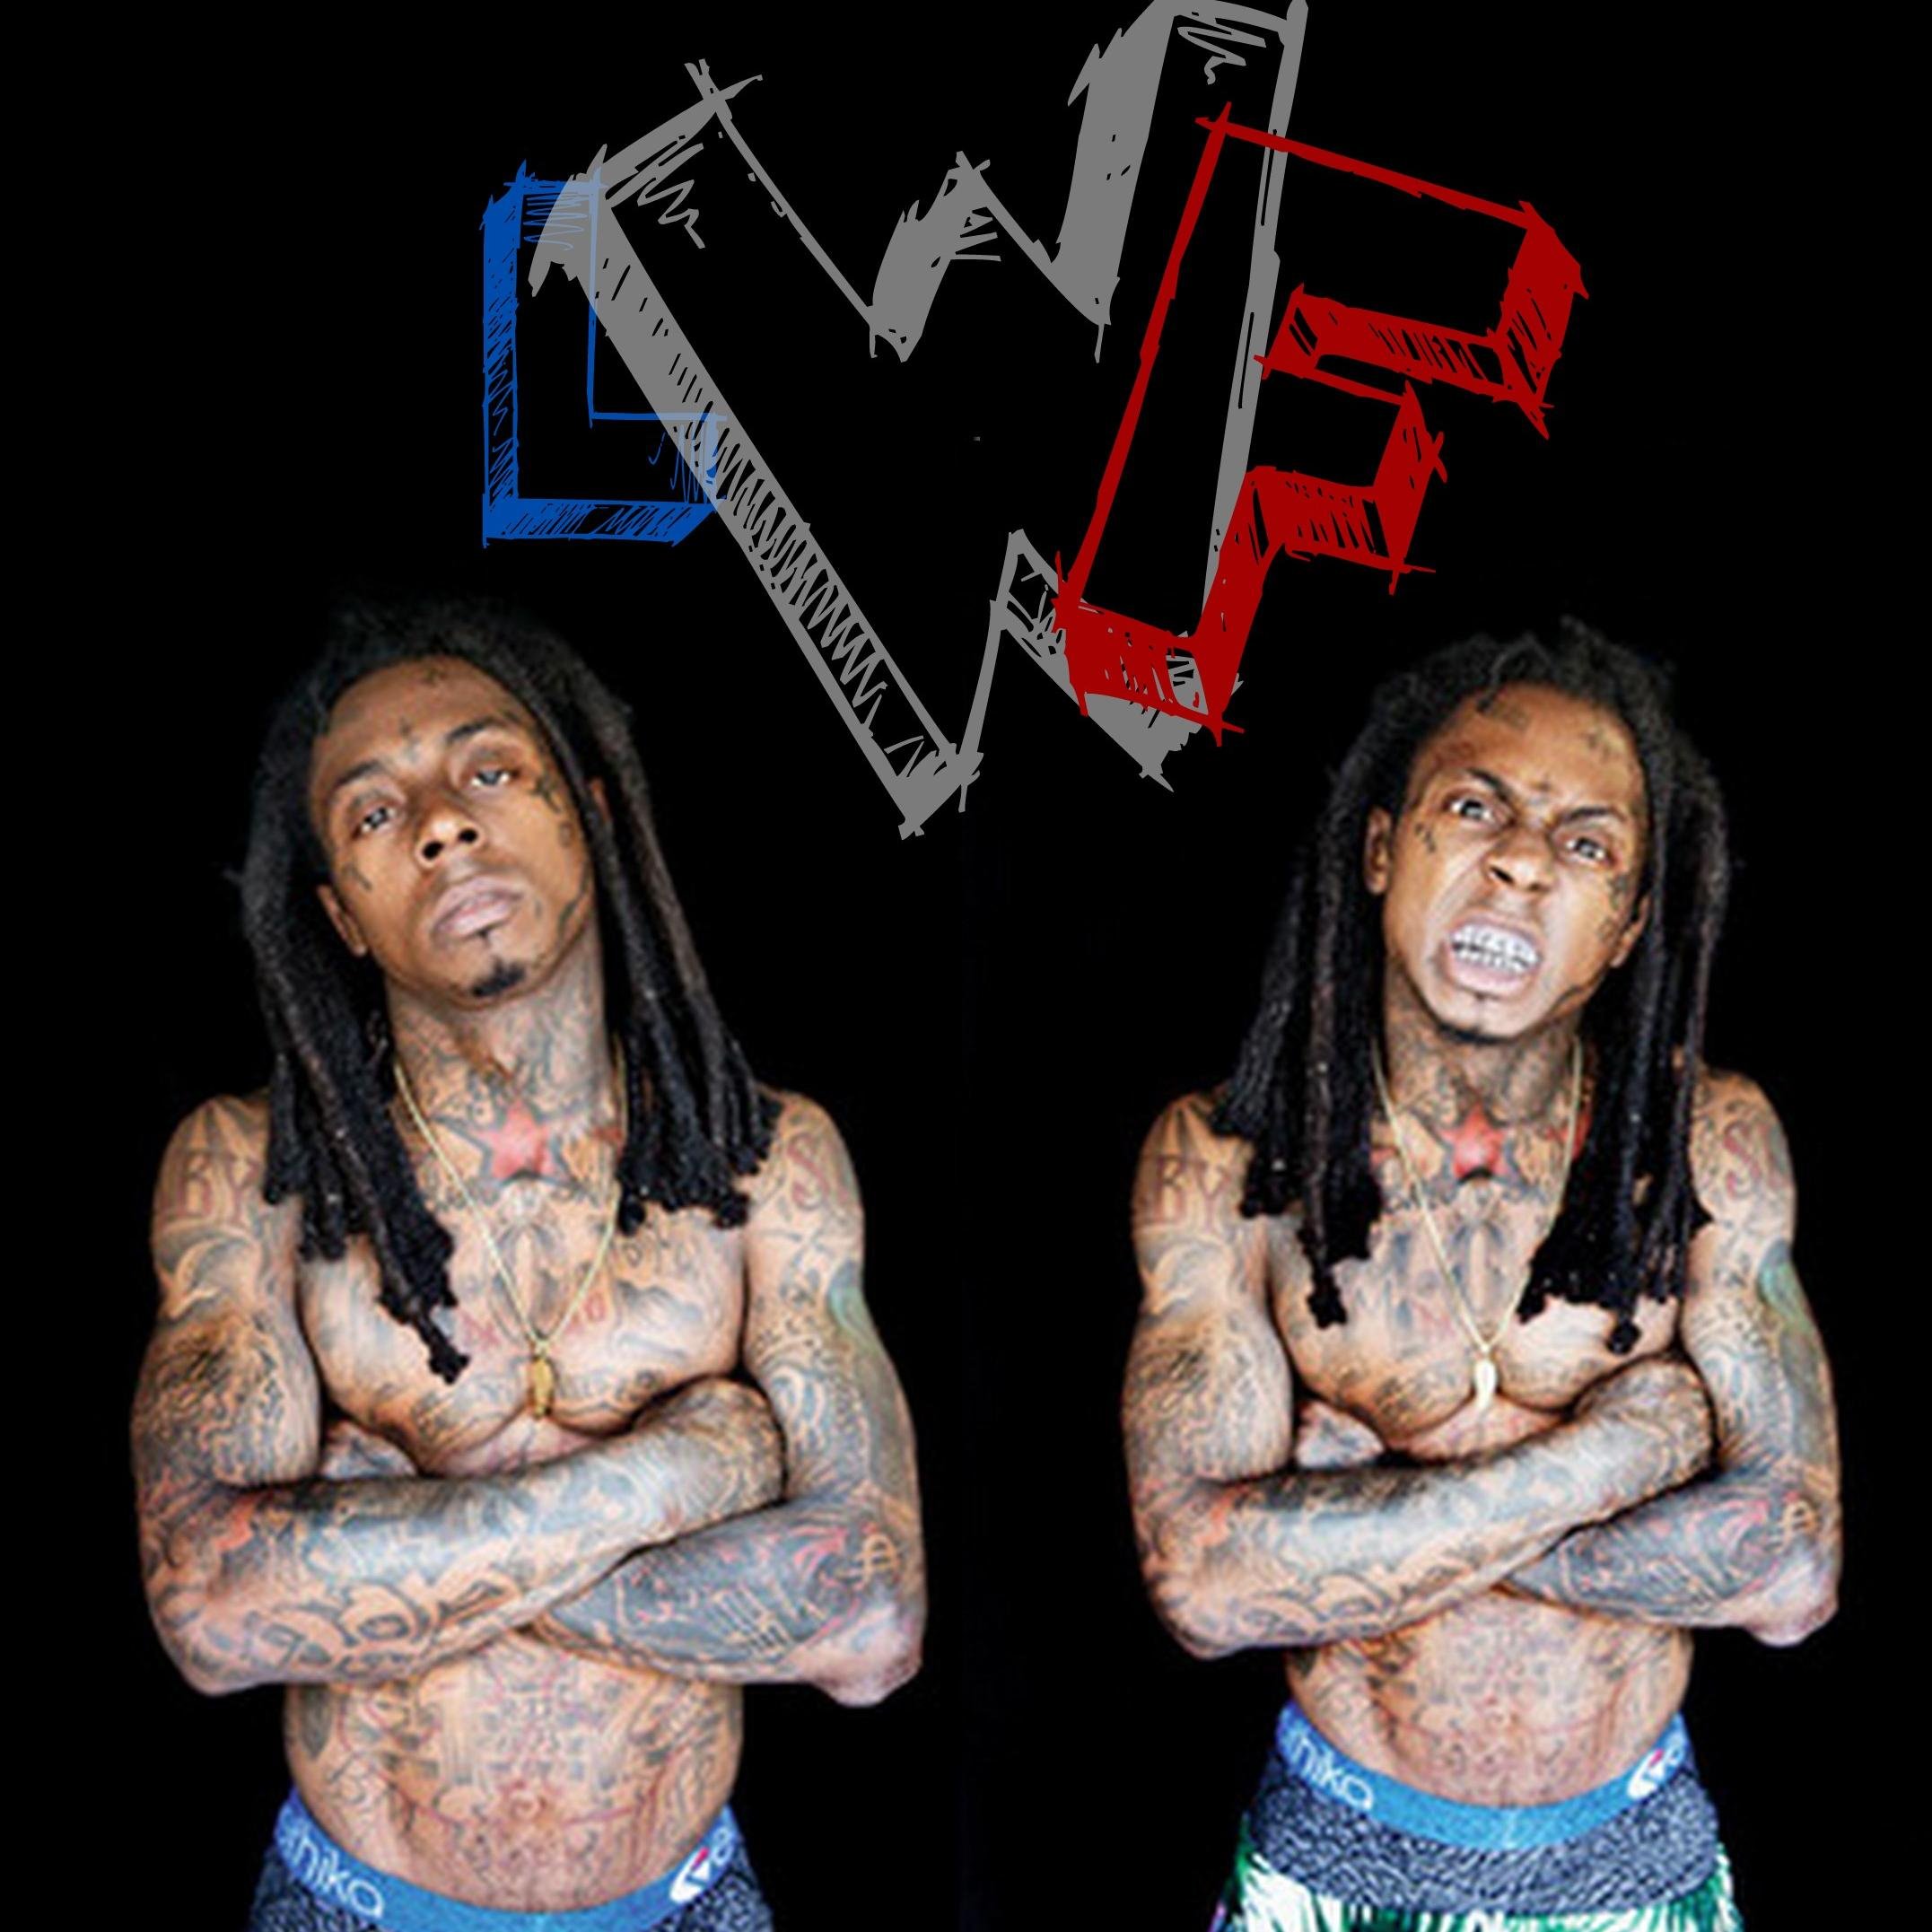 Lil Wayne France.